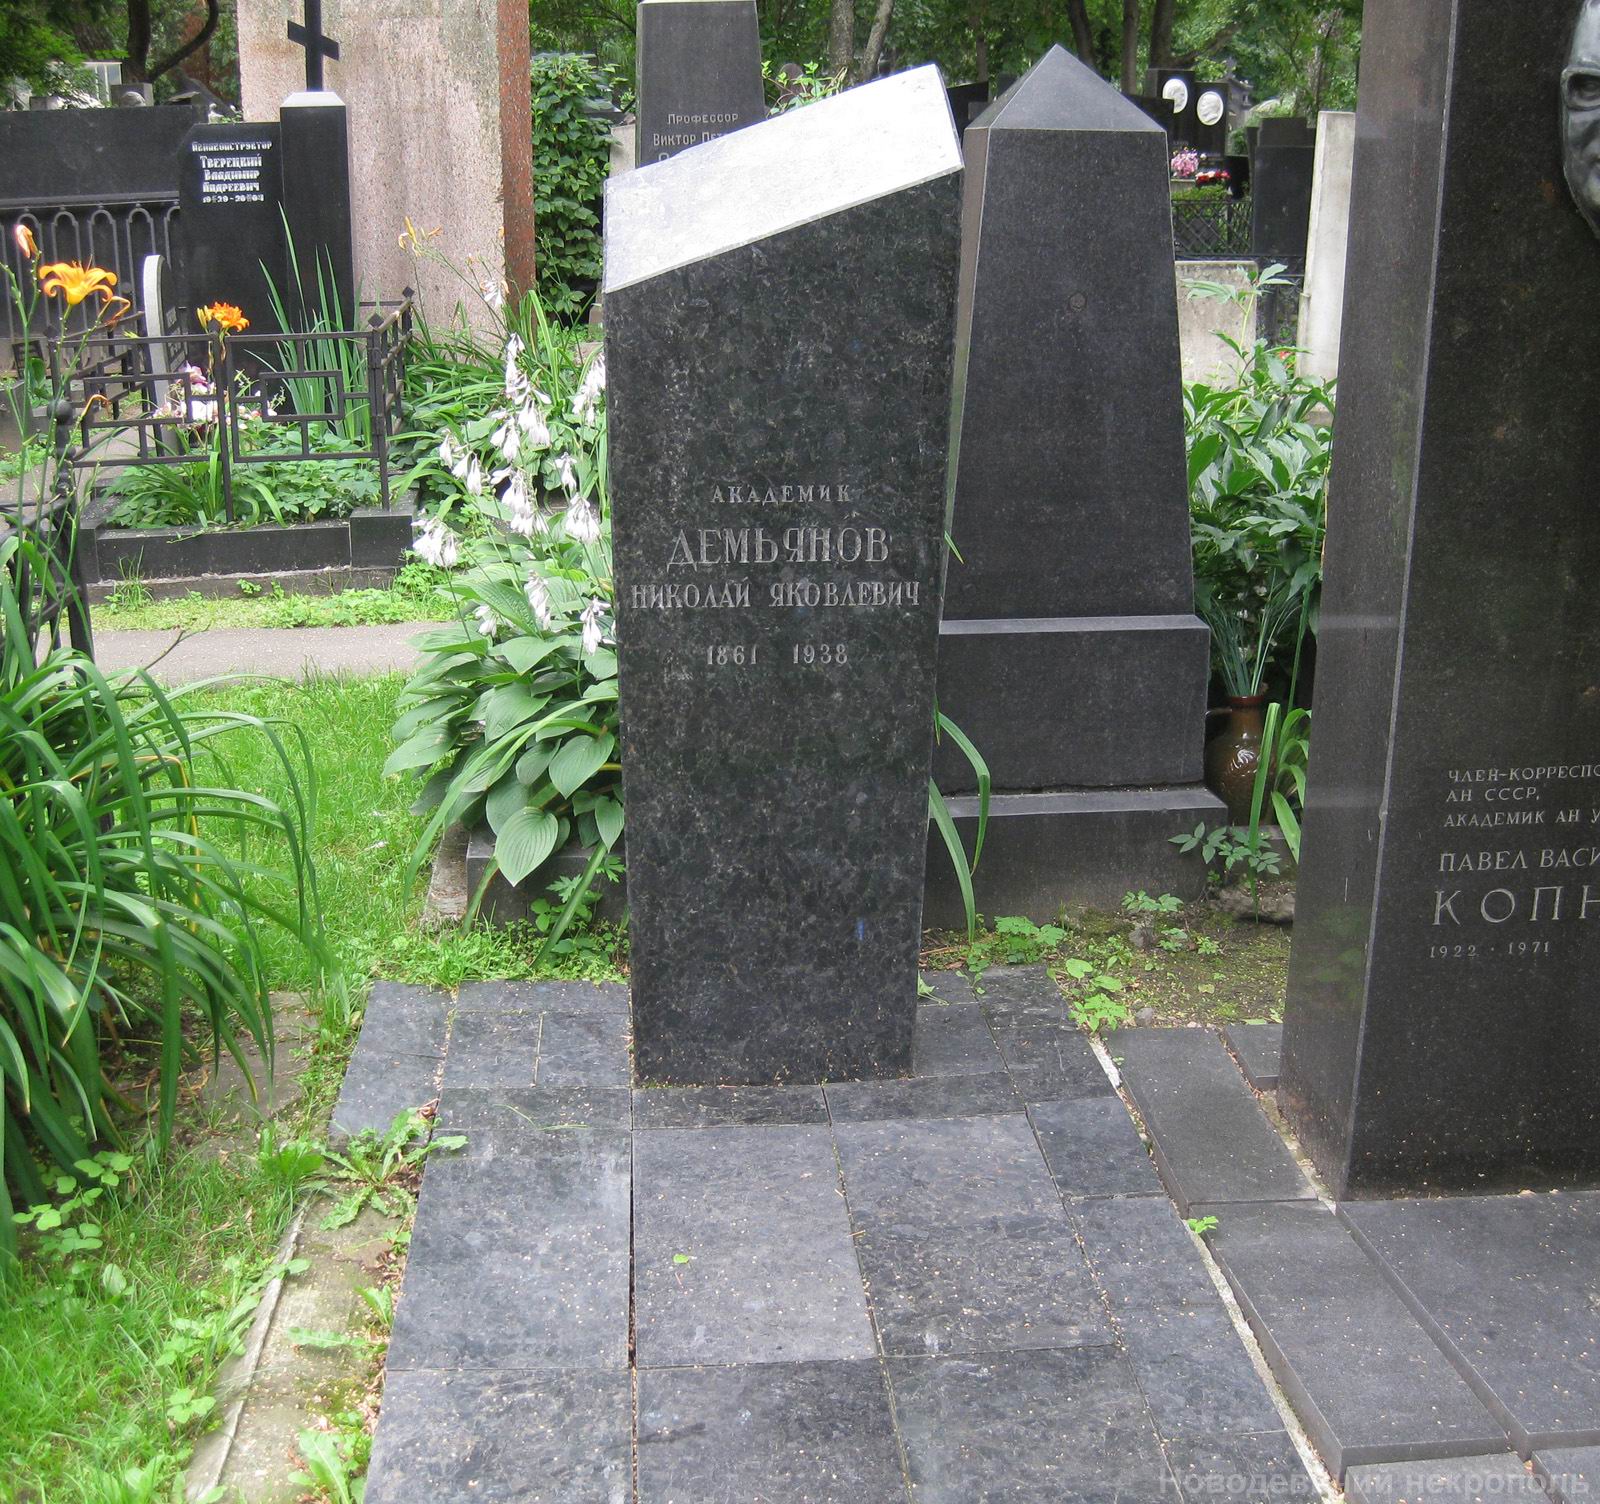 Памятник на могиле Демьянова Н.Я. (1861–1938), арх. Ю.Соколов, на Новодевичьем кладбище (3–20–8).